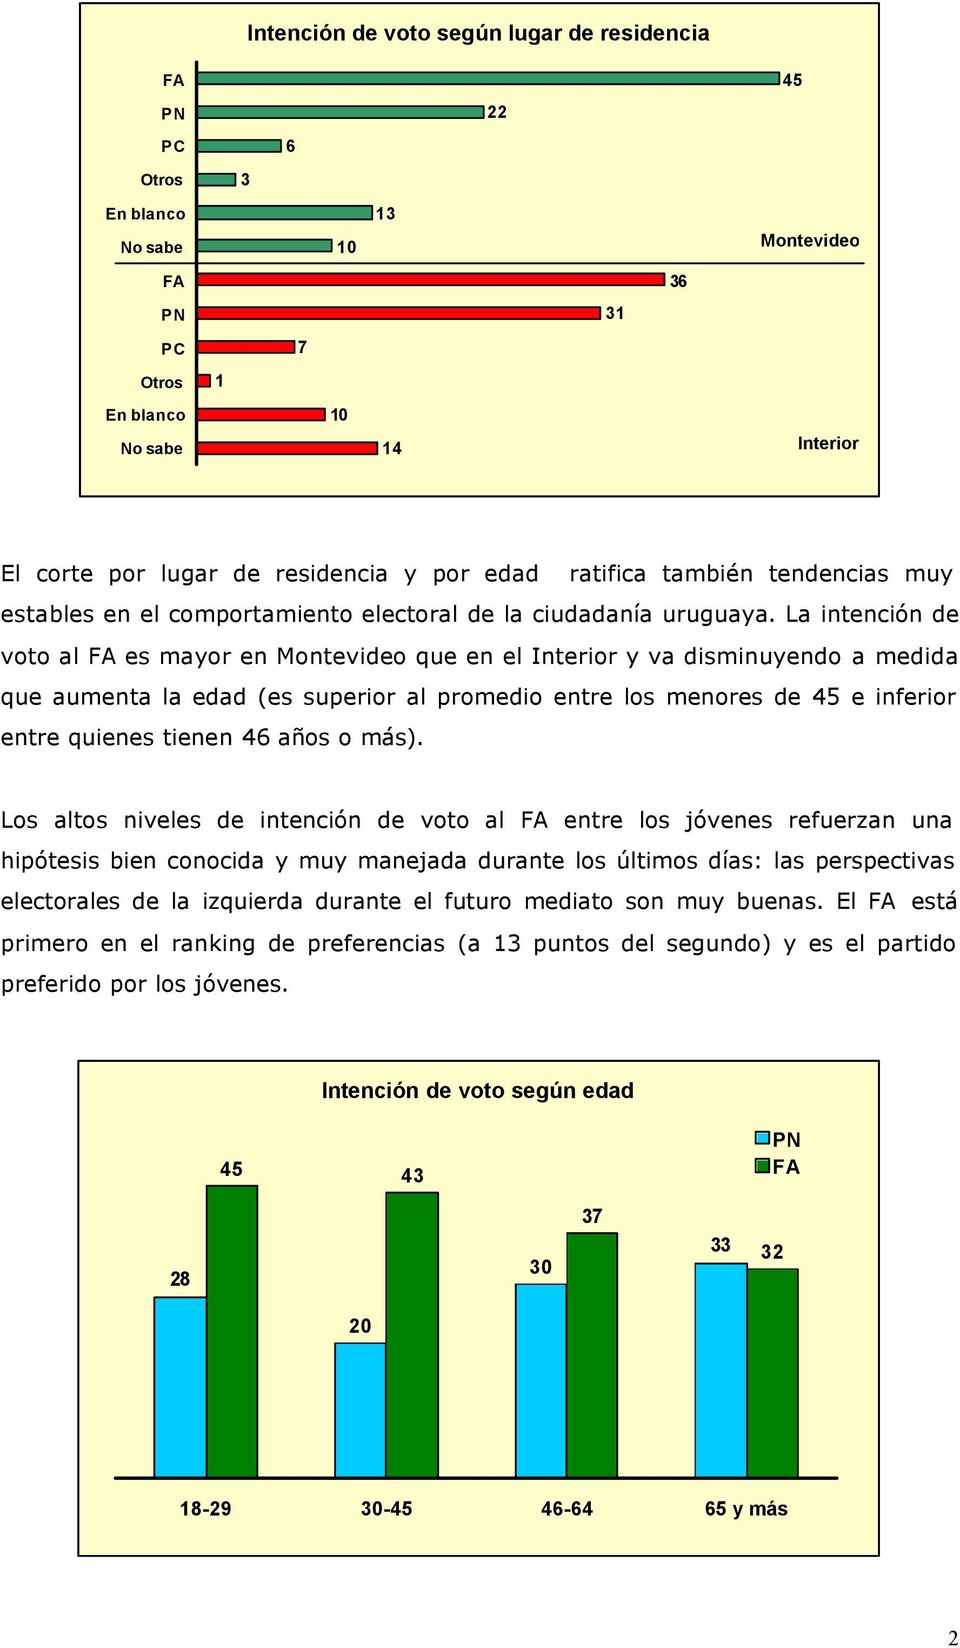 La intención de voto al es mayor en Montevideo que en el Interior y va disminuyendo a medida que aumenta la edad (es superior al promedio entre los menores de 45 e inferior entre quienes tienen 46